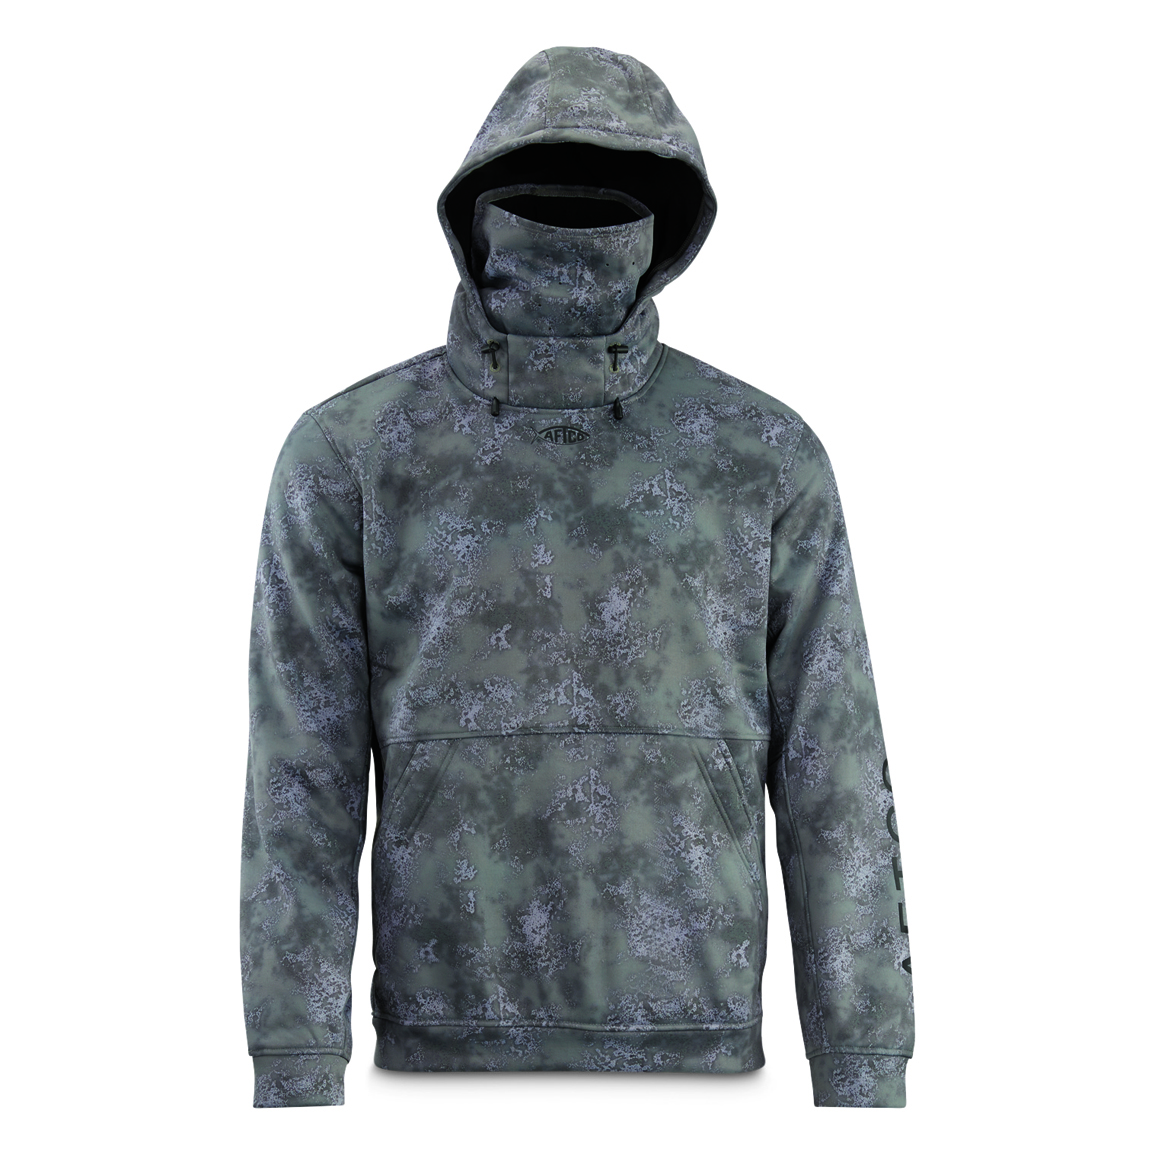 AFTCO Men's Reaper Tactical Sweatshirt, Camo - 731837, Sweatshirts